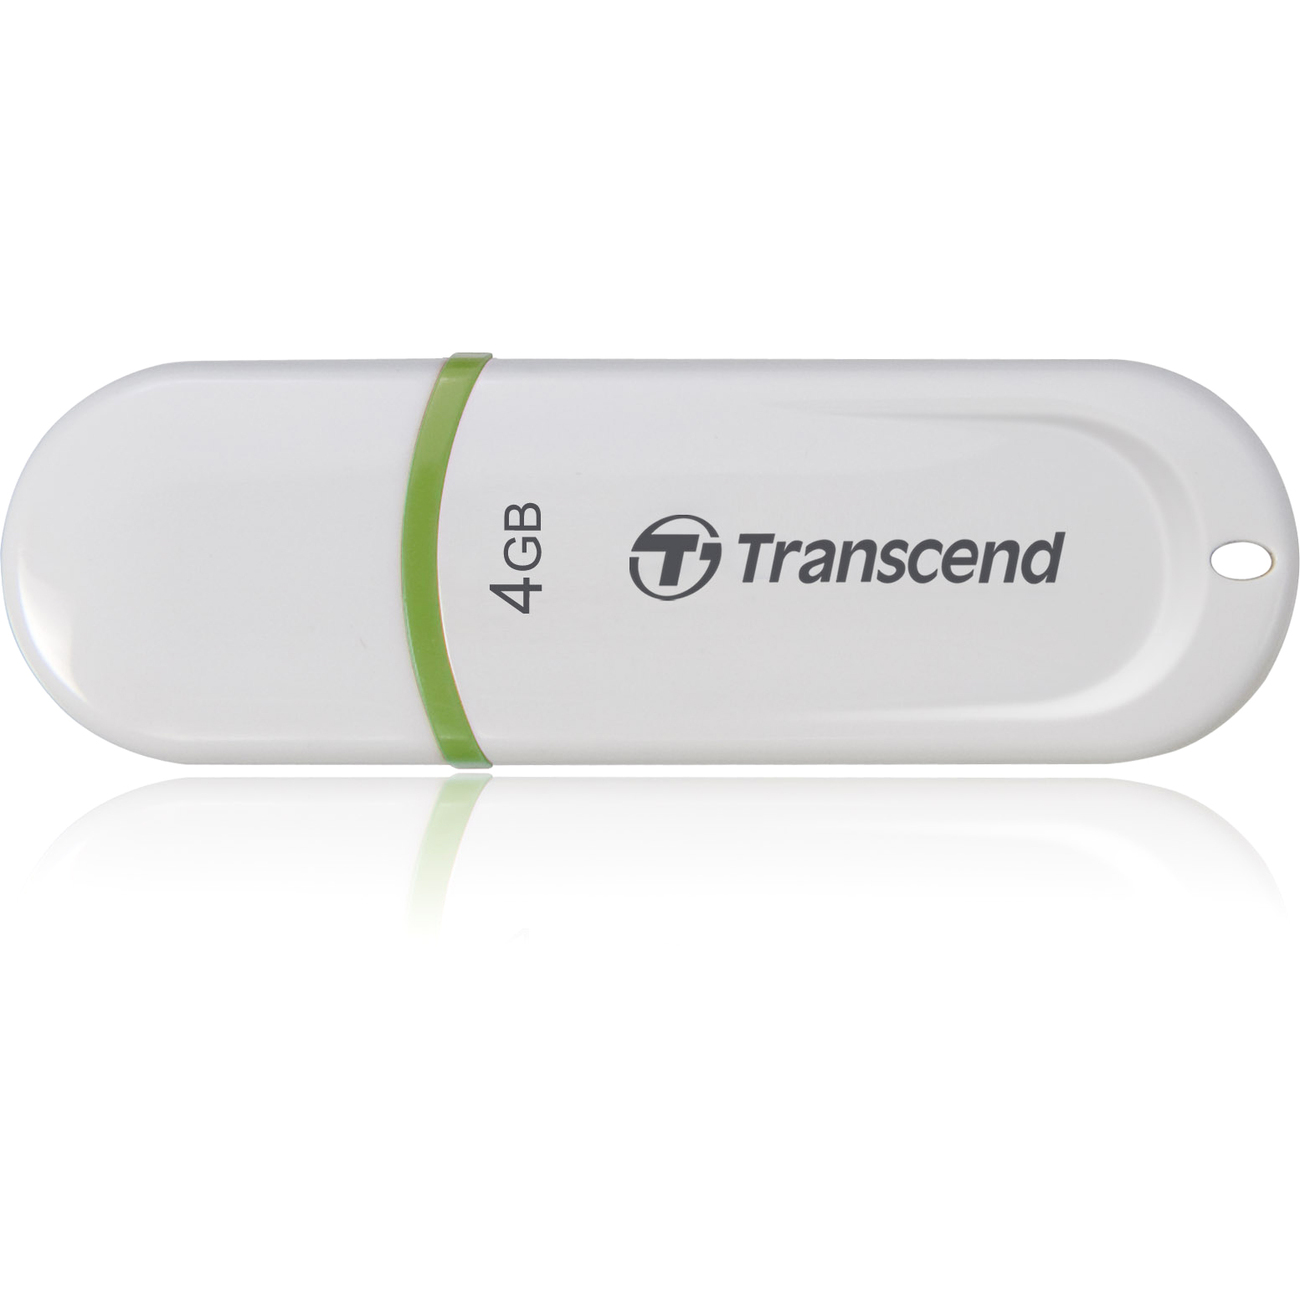 Transcend USB DRIVE, 4GB, JETFLASH 330